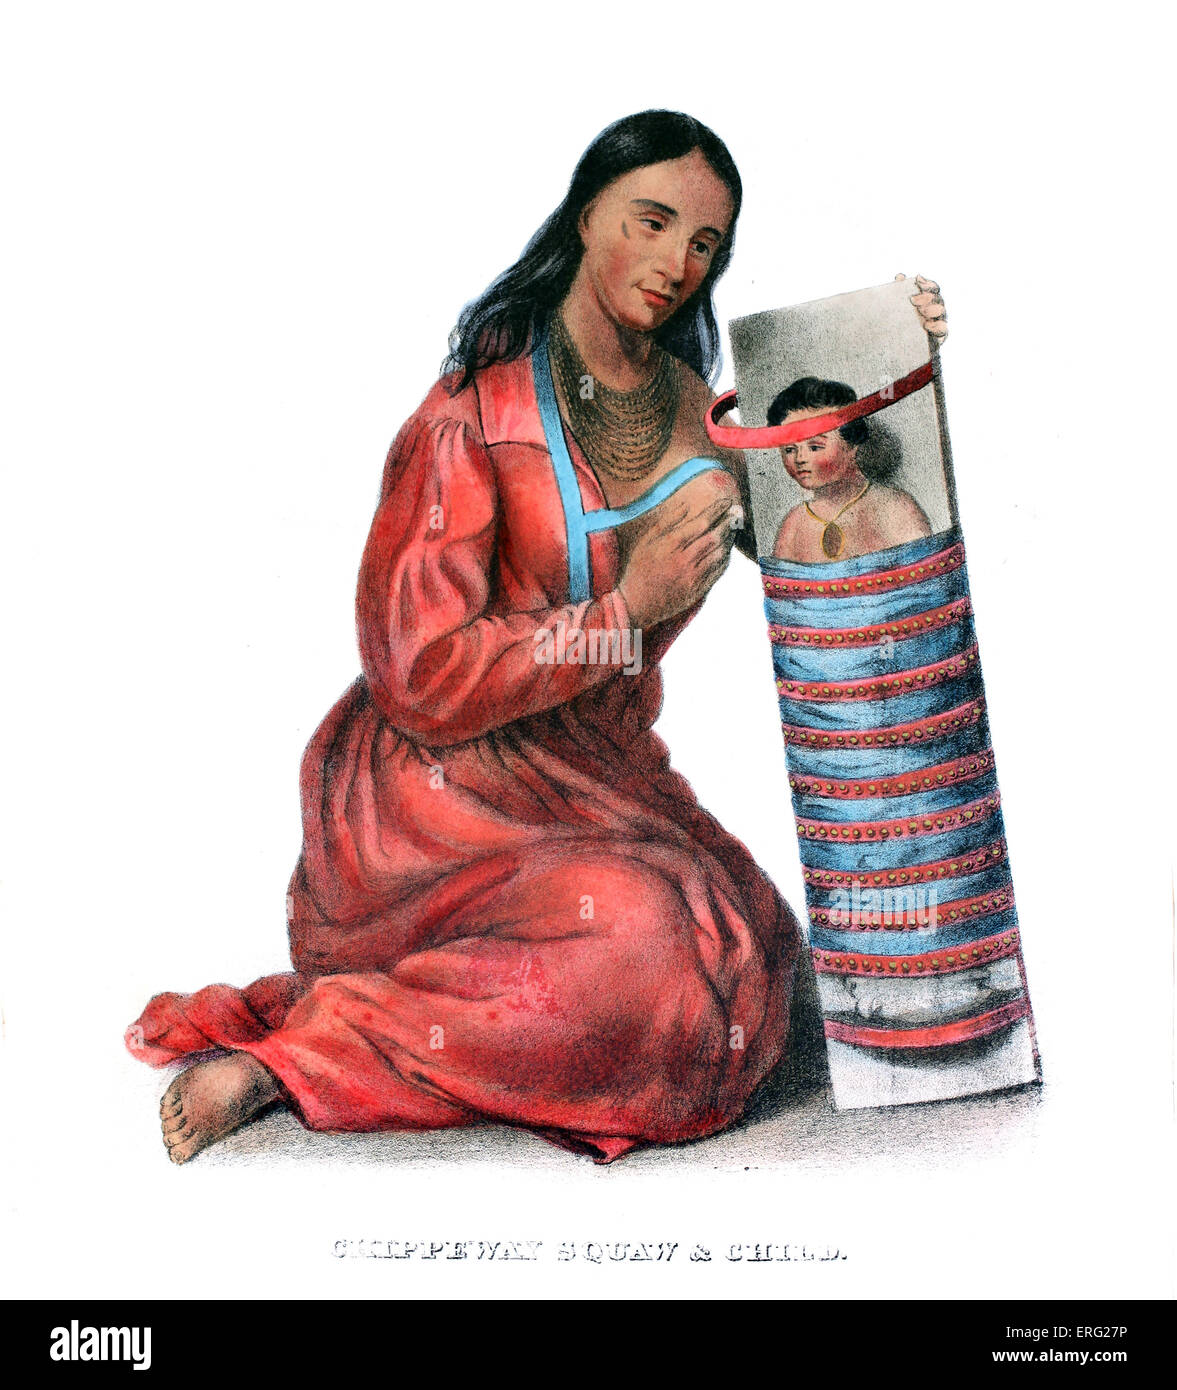 Chippeway (Ojibwe) donna e bambino. Native American donna della tribù Ojibwe allattava il bambino che è legato ad una culla. Foto Stock